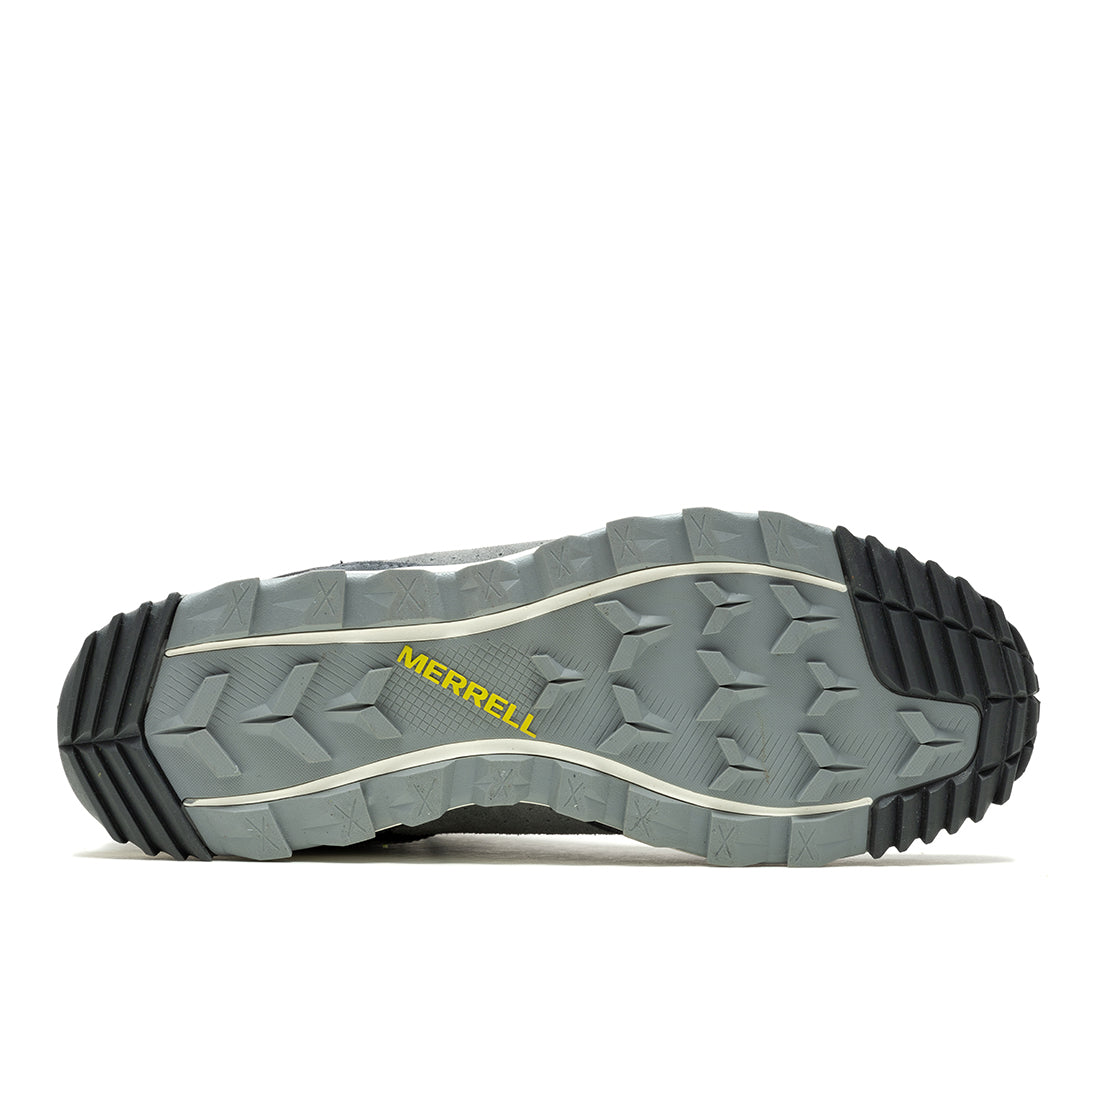 Wildwood Mid Ltr Waterproof-Granite Mens Trail Running Shoes